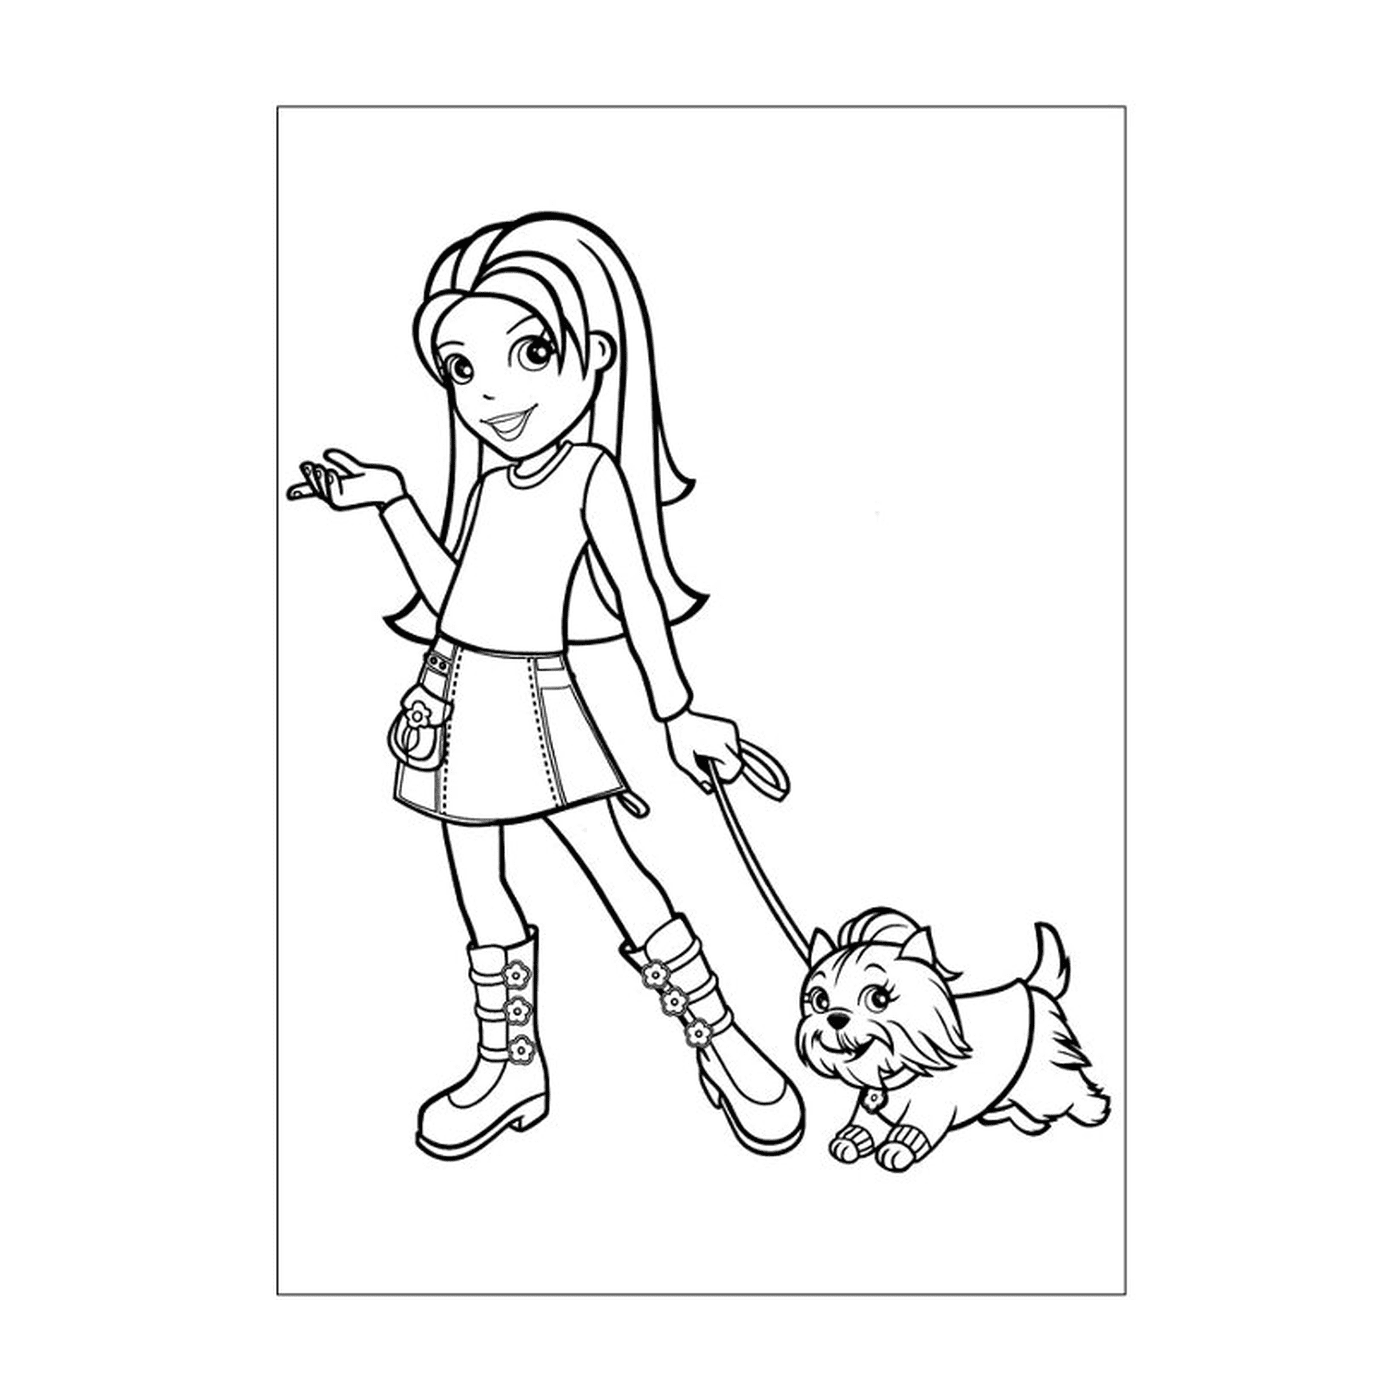  Девушка гуляет с собакой на поводке 